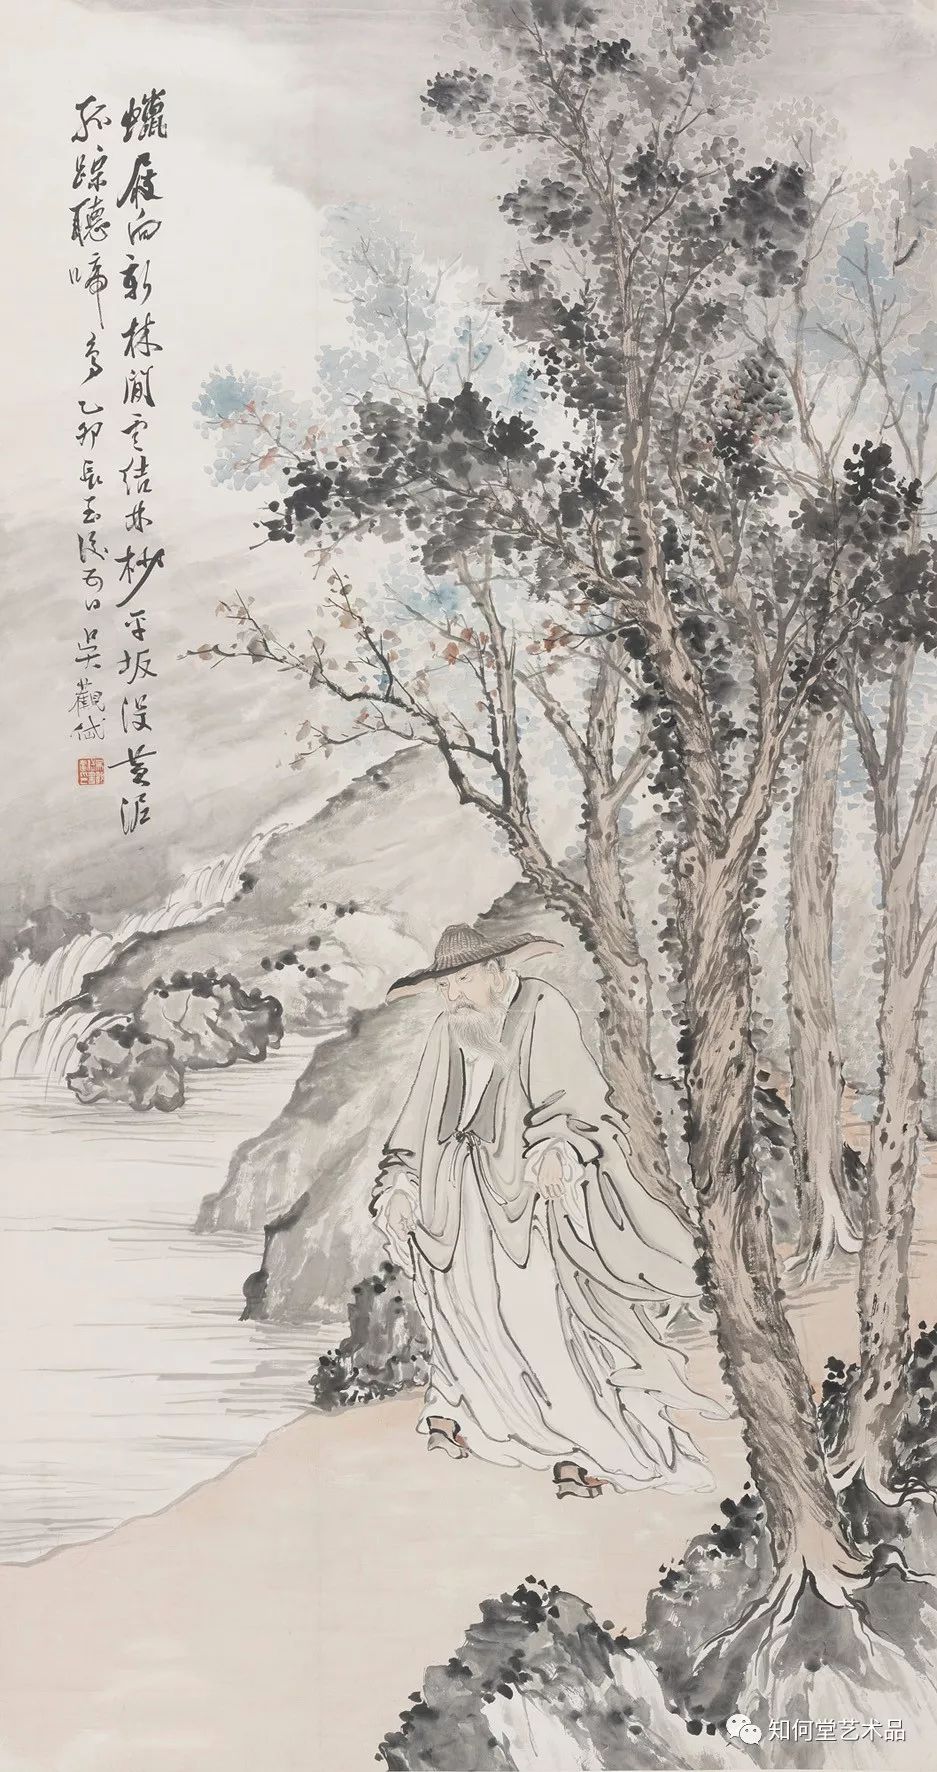 立轴吴观岱 独钓寒江近代中国文人画变法,是吴观岱开创先河,对中国